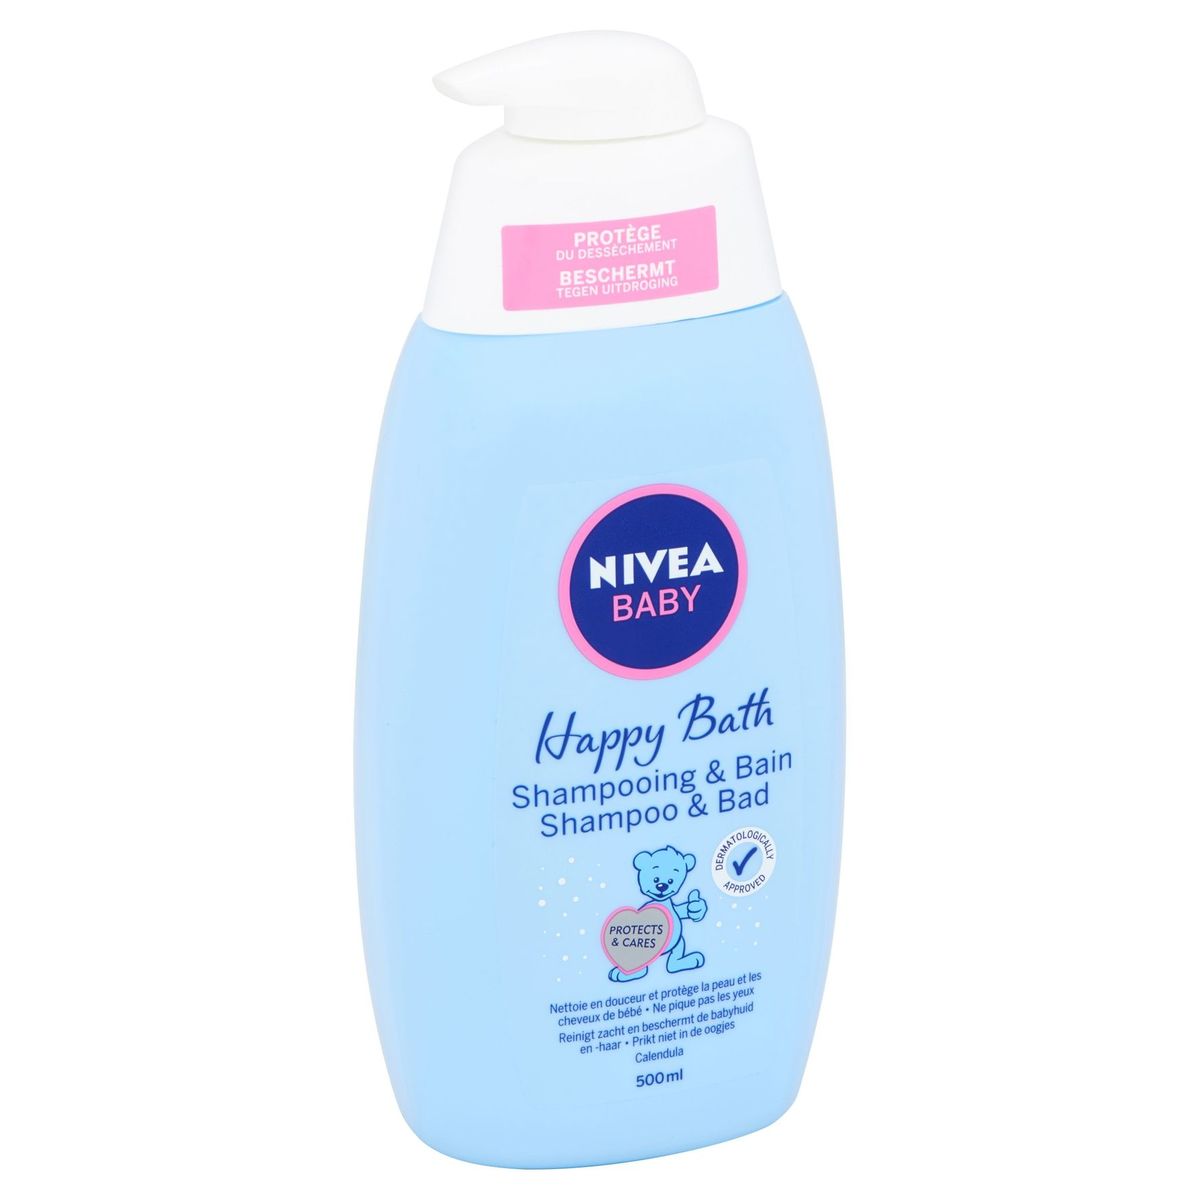 Nivea Baby Happy Bath Shampoo & Bad 500 ml